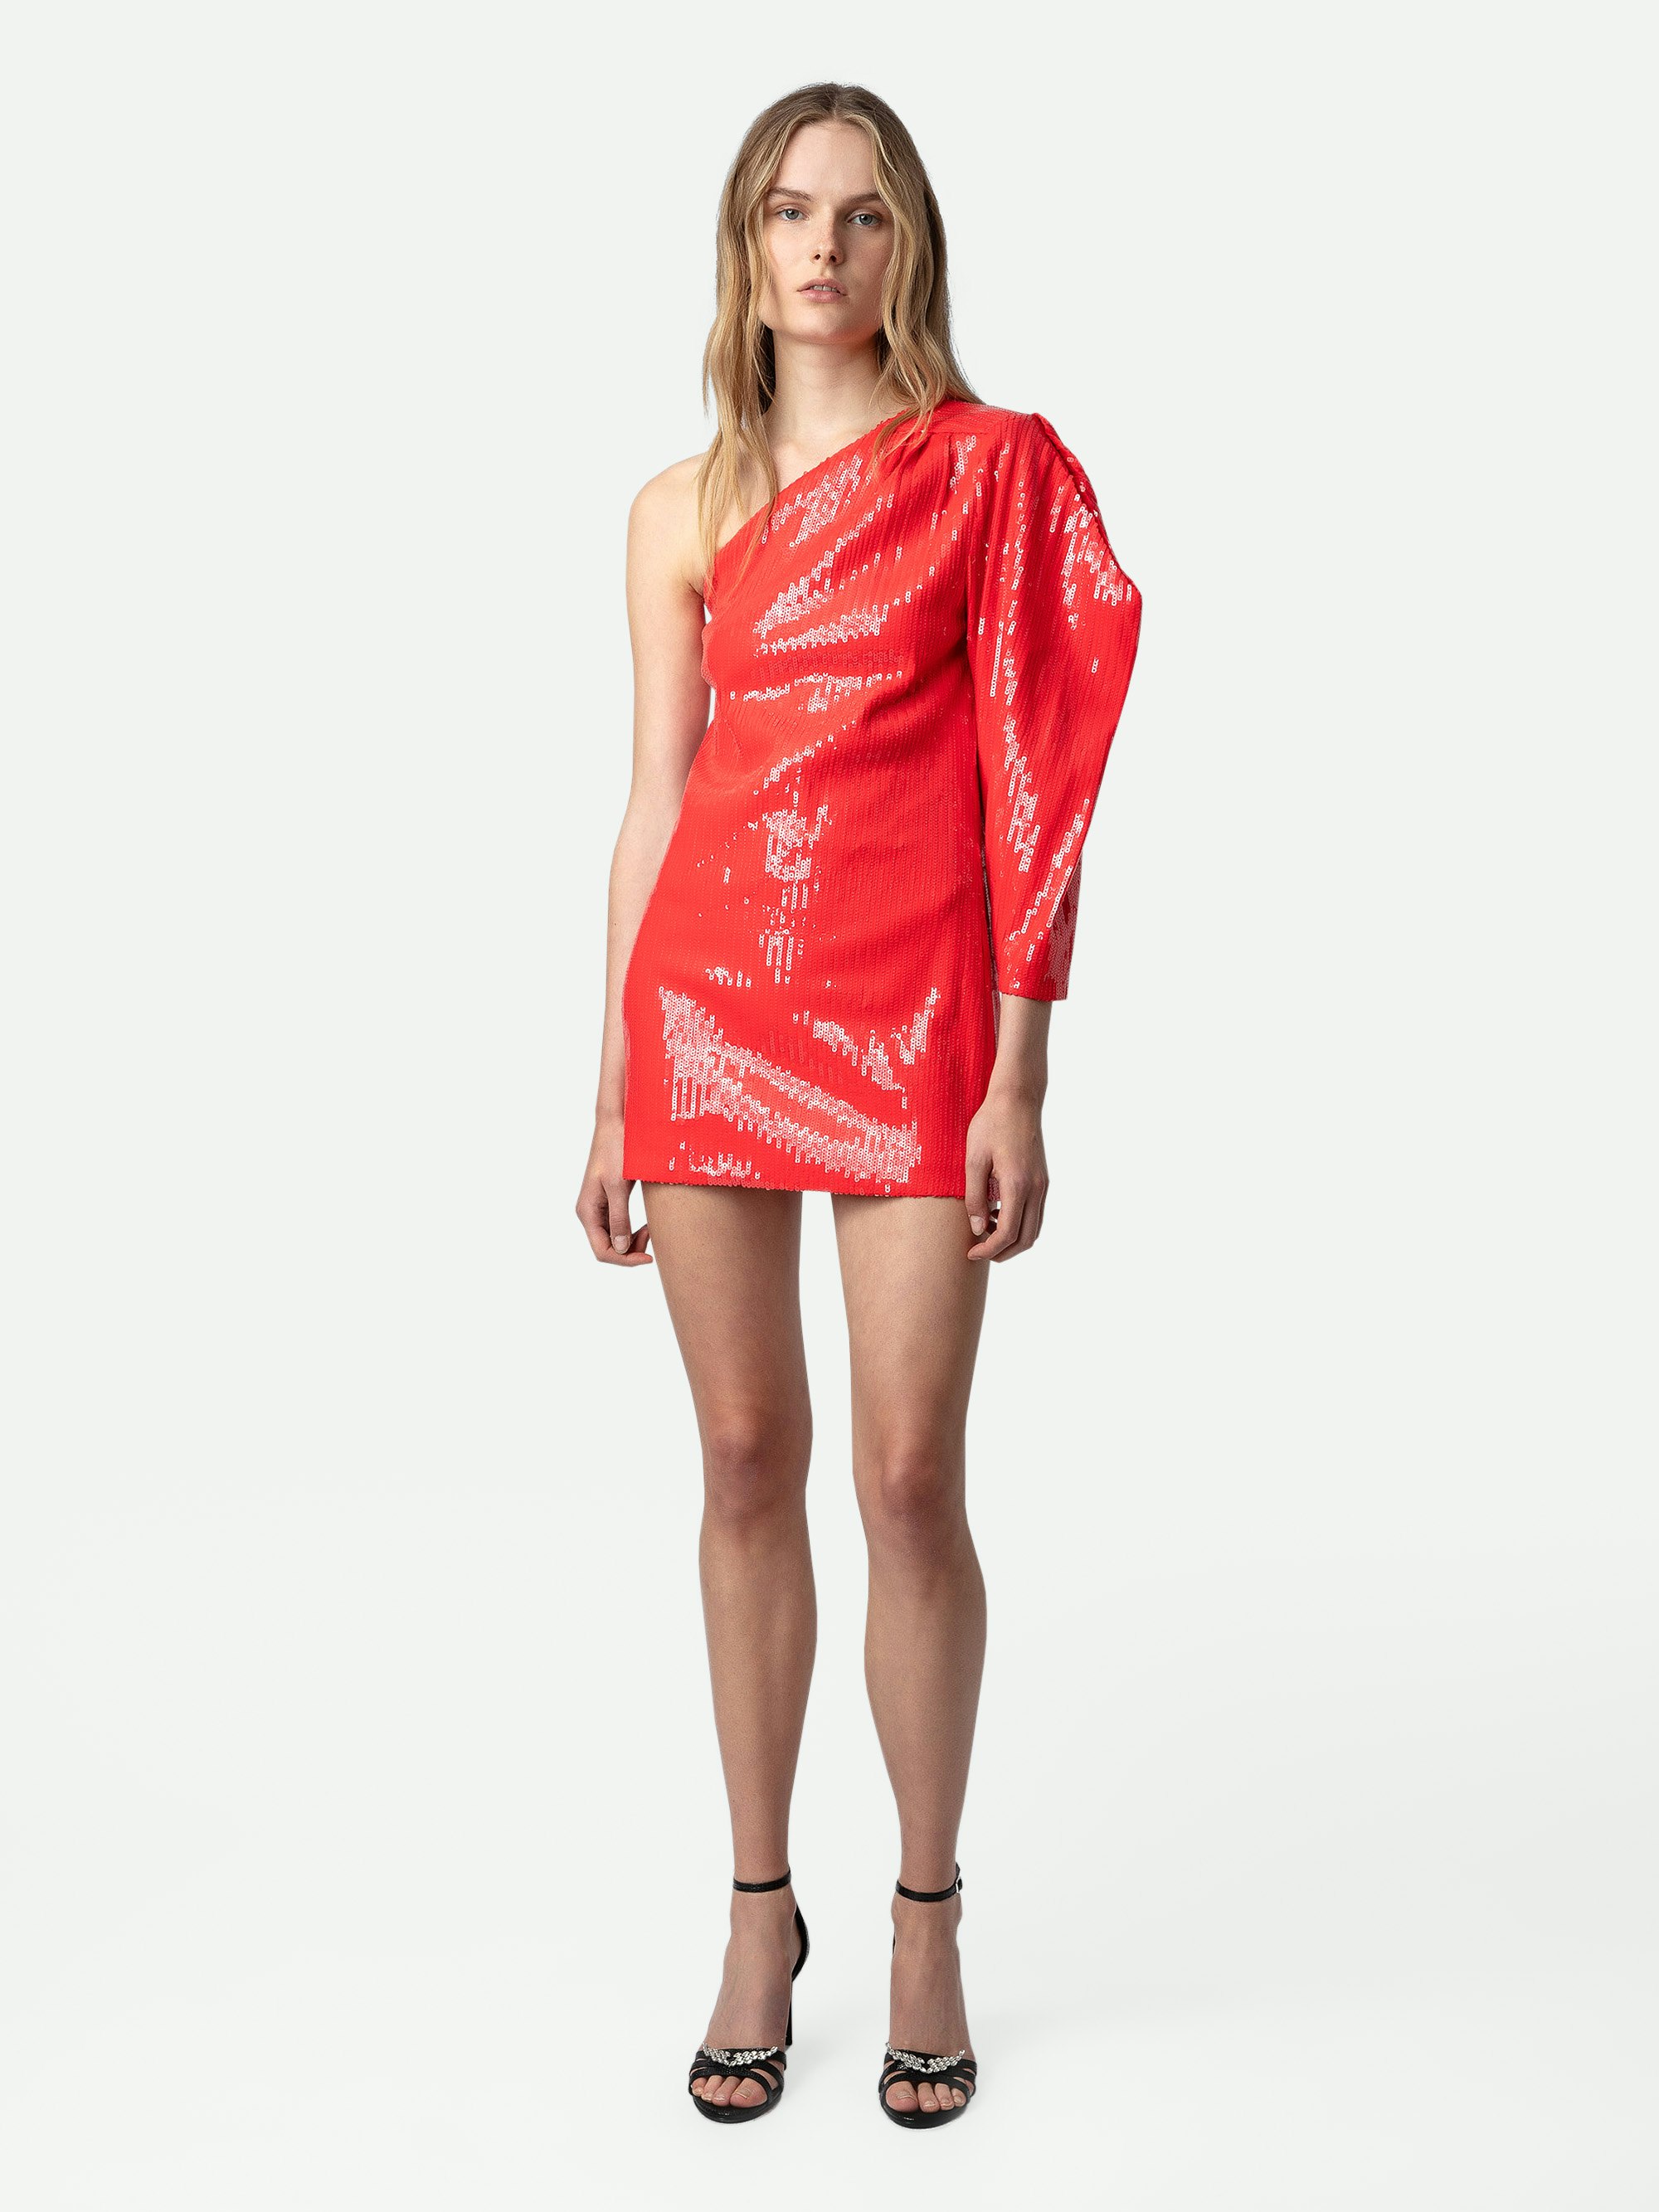 Robe Roely Sequins - Robe courte rouge à sequins et manche asymétrique et drapée.